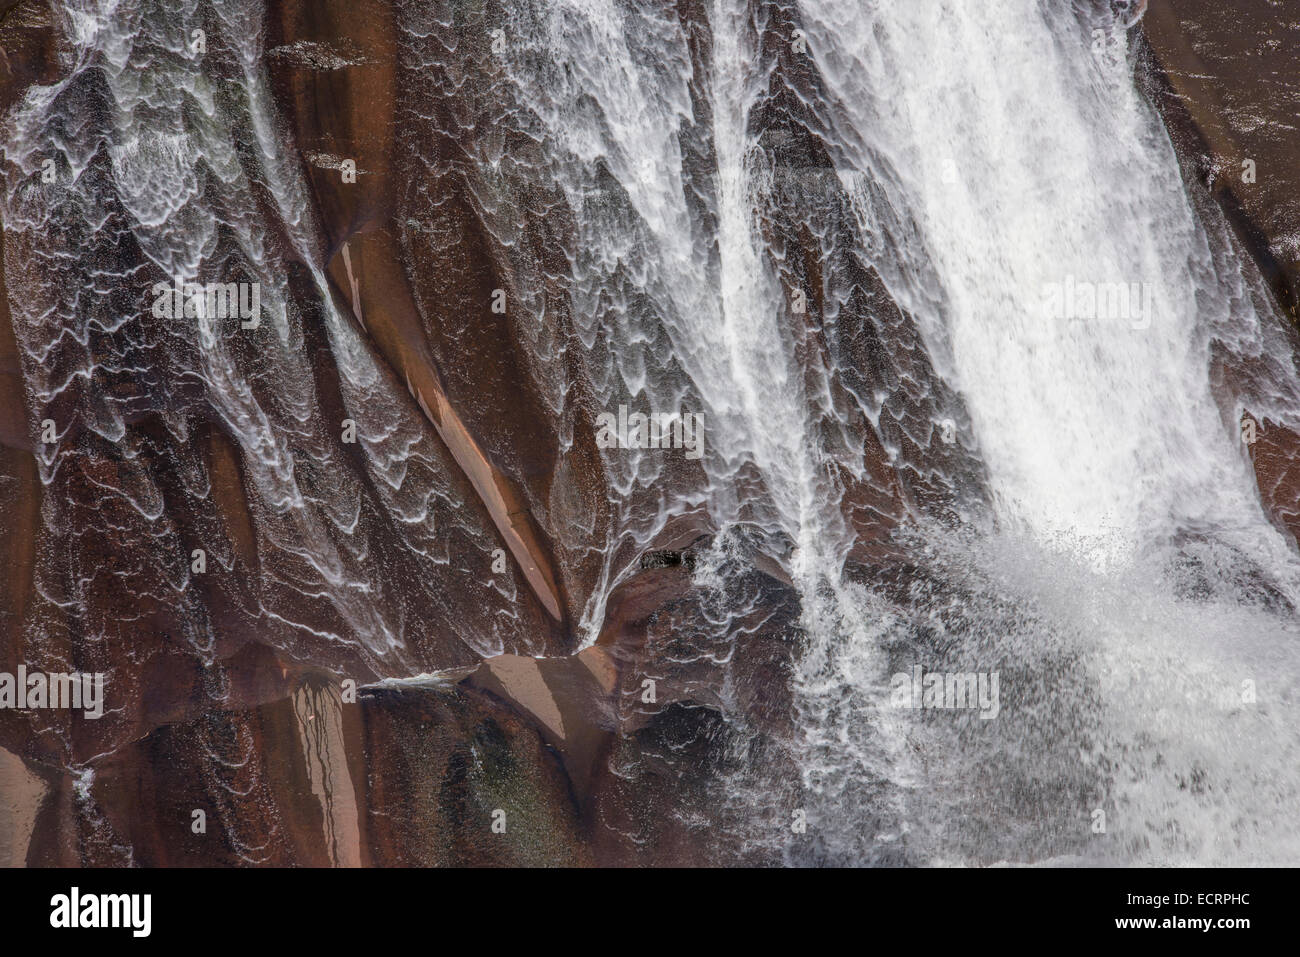 Cascading water falls at Toxaway Falls, North Carolina Stock Photo